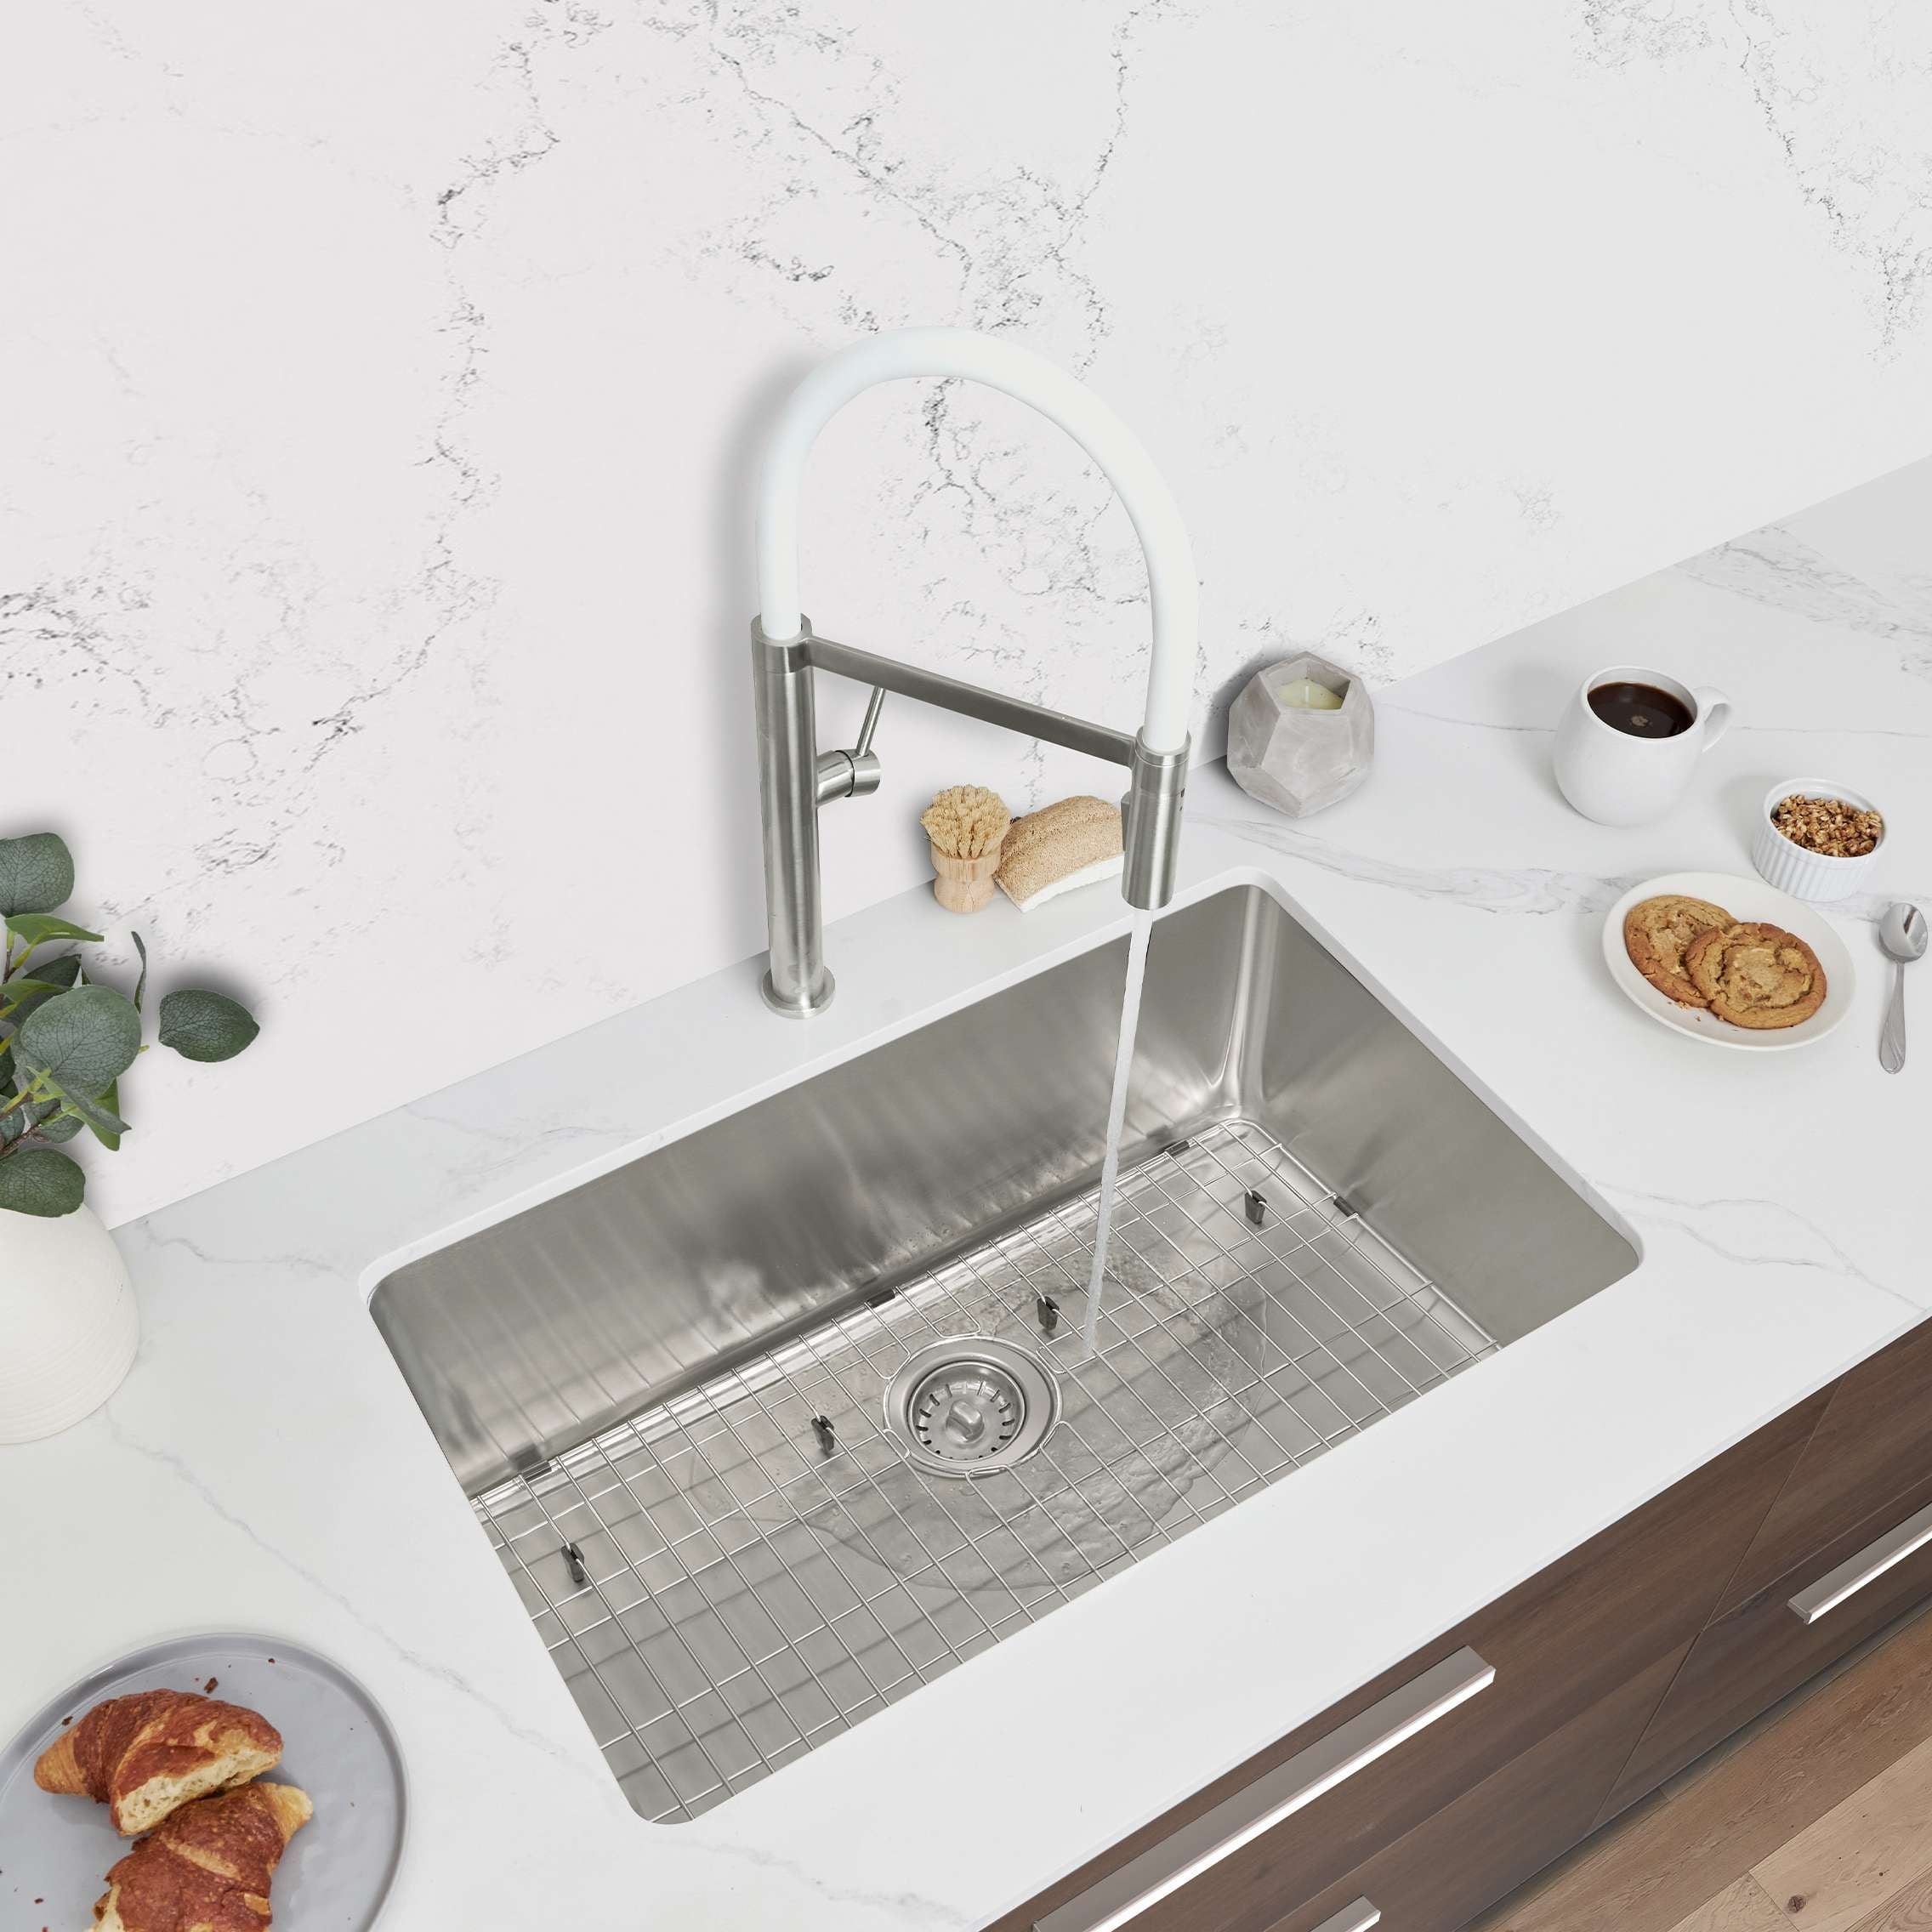 Clear Rubber Kitchen Sink Mats & Divider Mat Set